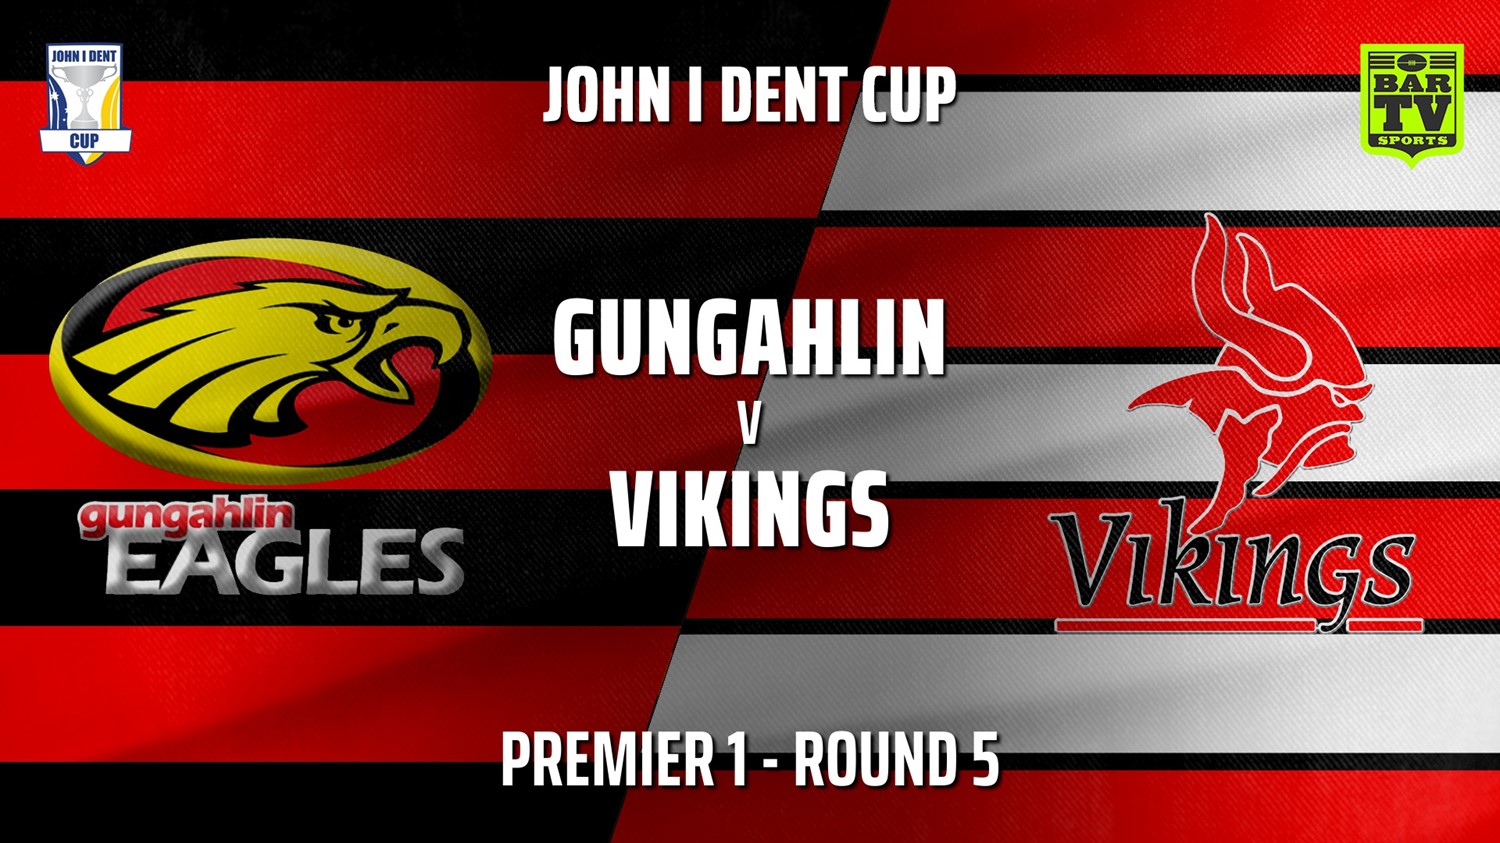 210522-John I Dent Round 5 - Premier 1 - Gungahlin Eagles v Tuggeranong Vikings Minigame Slate Image